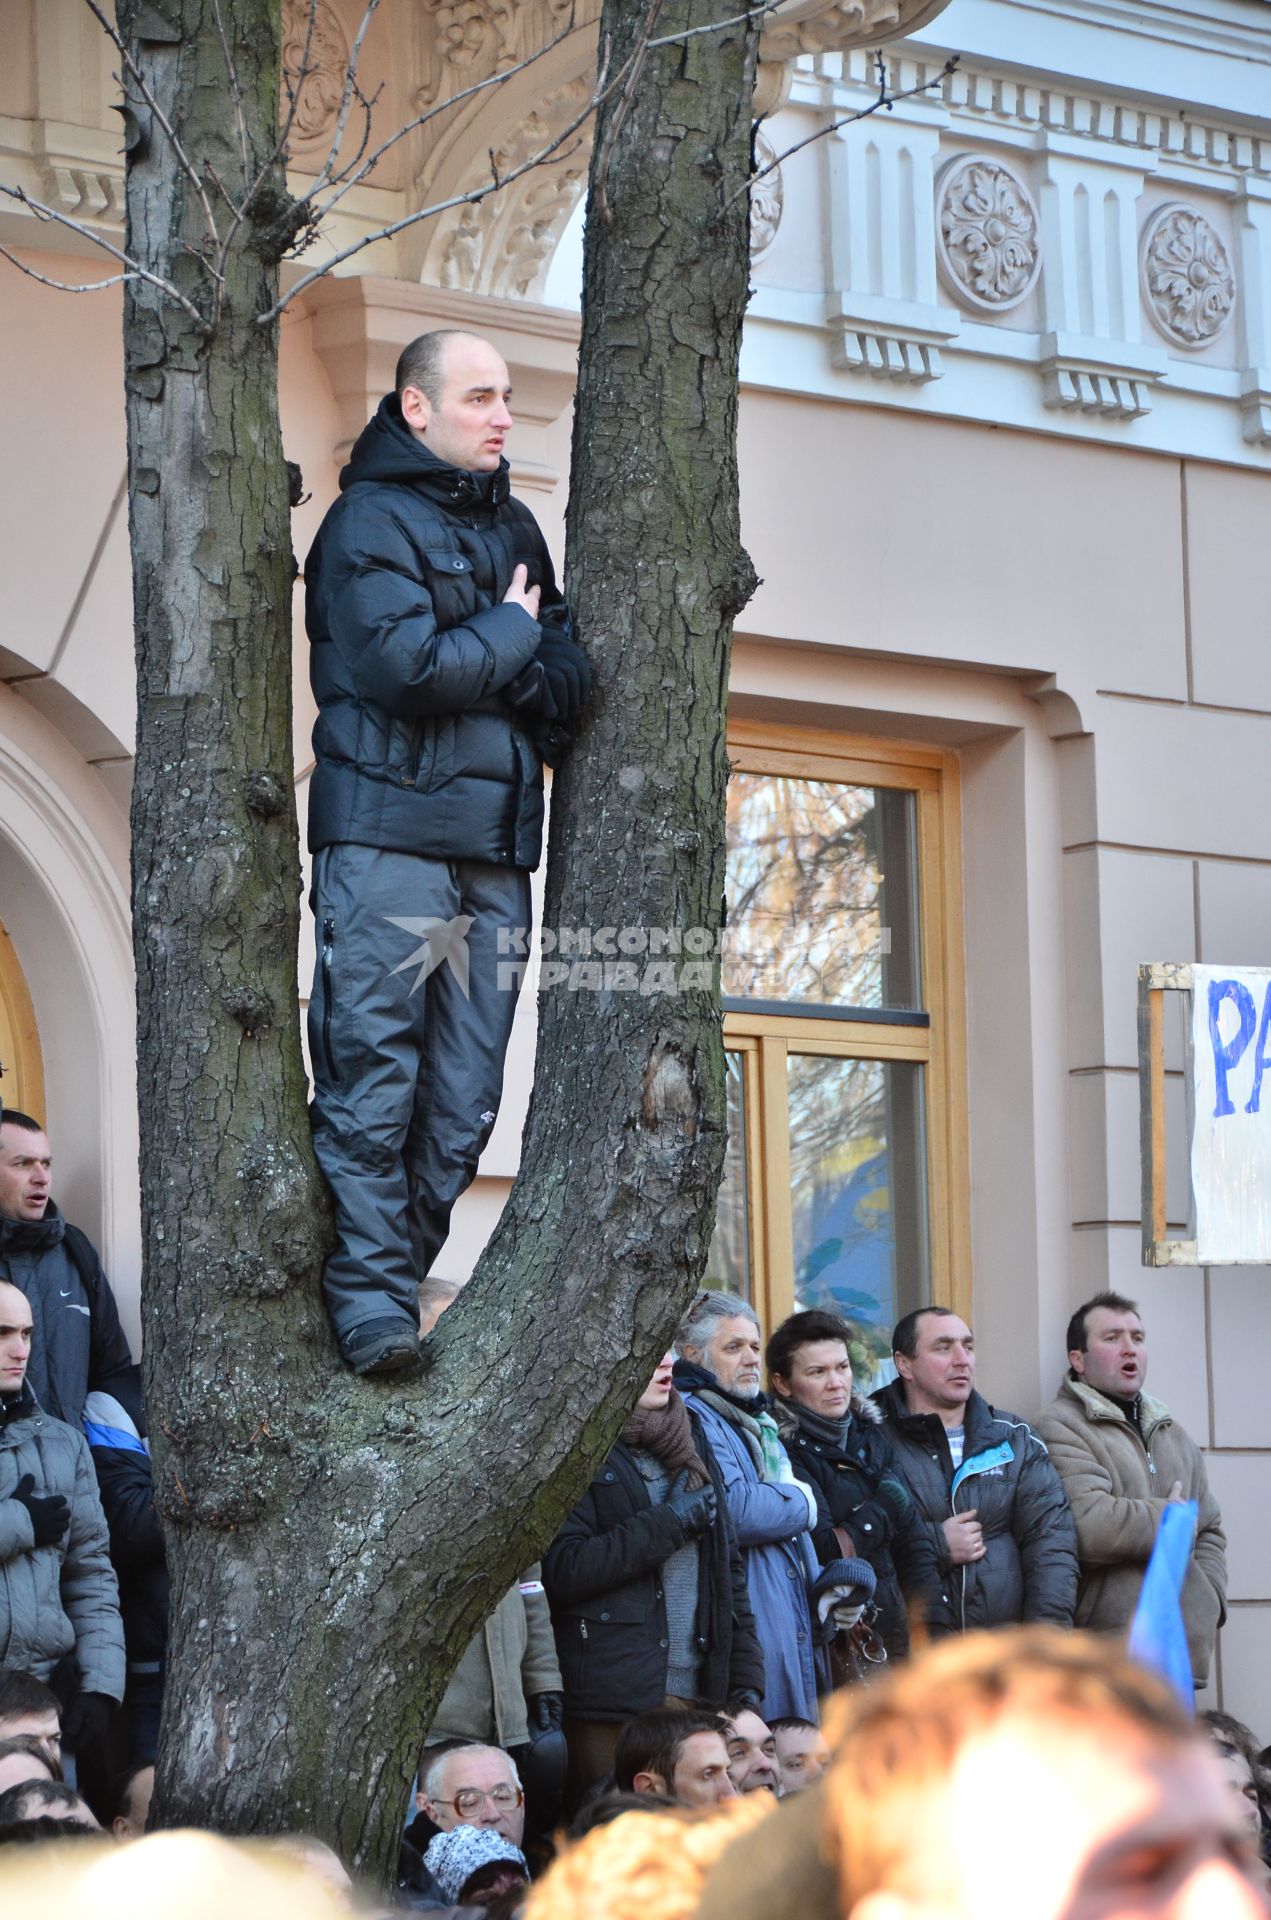 Евромайдан. Акция сторонников евроинтеграции Украины у здания Верховной Рады. На снимке: один из активистов стоит на дереве.